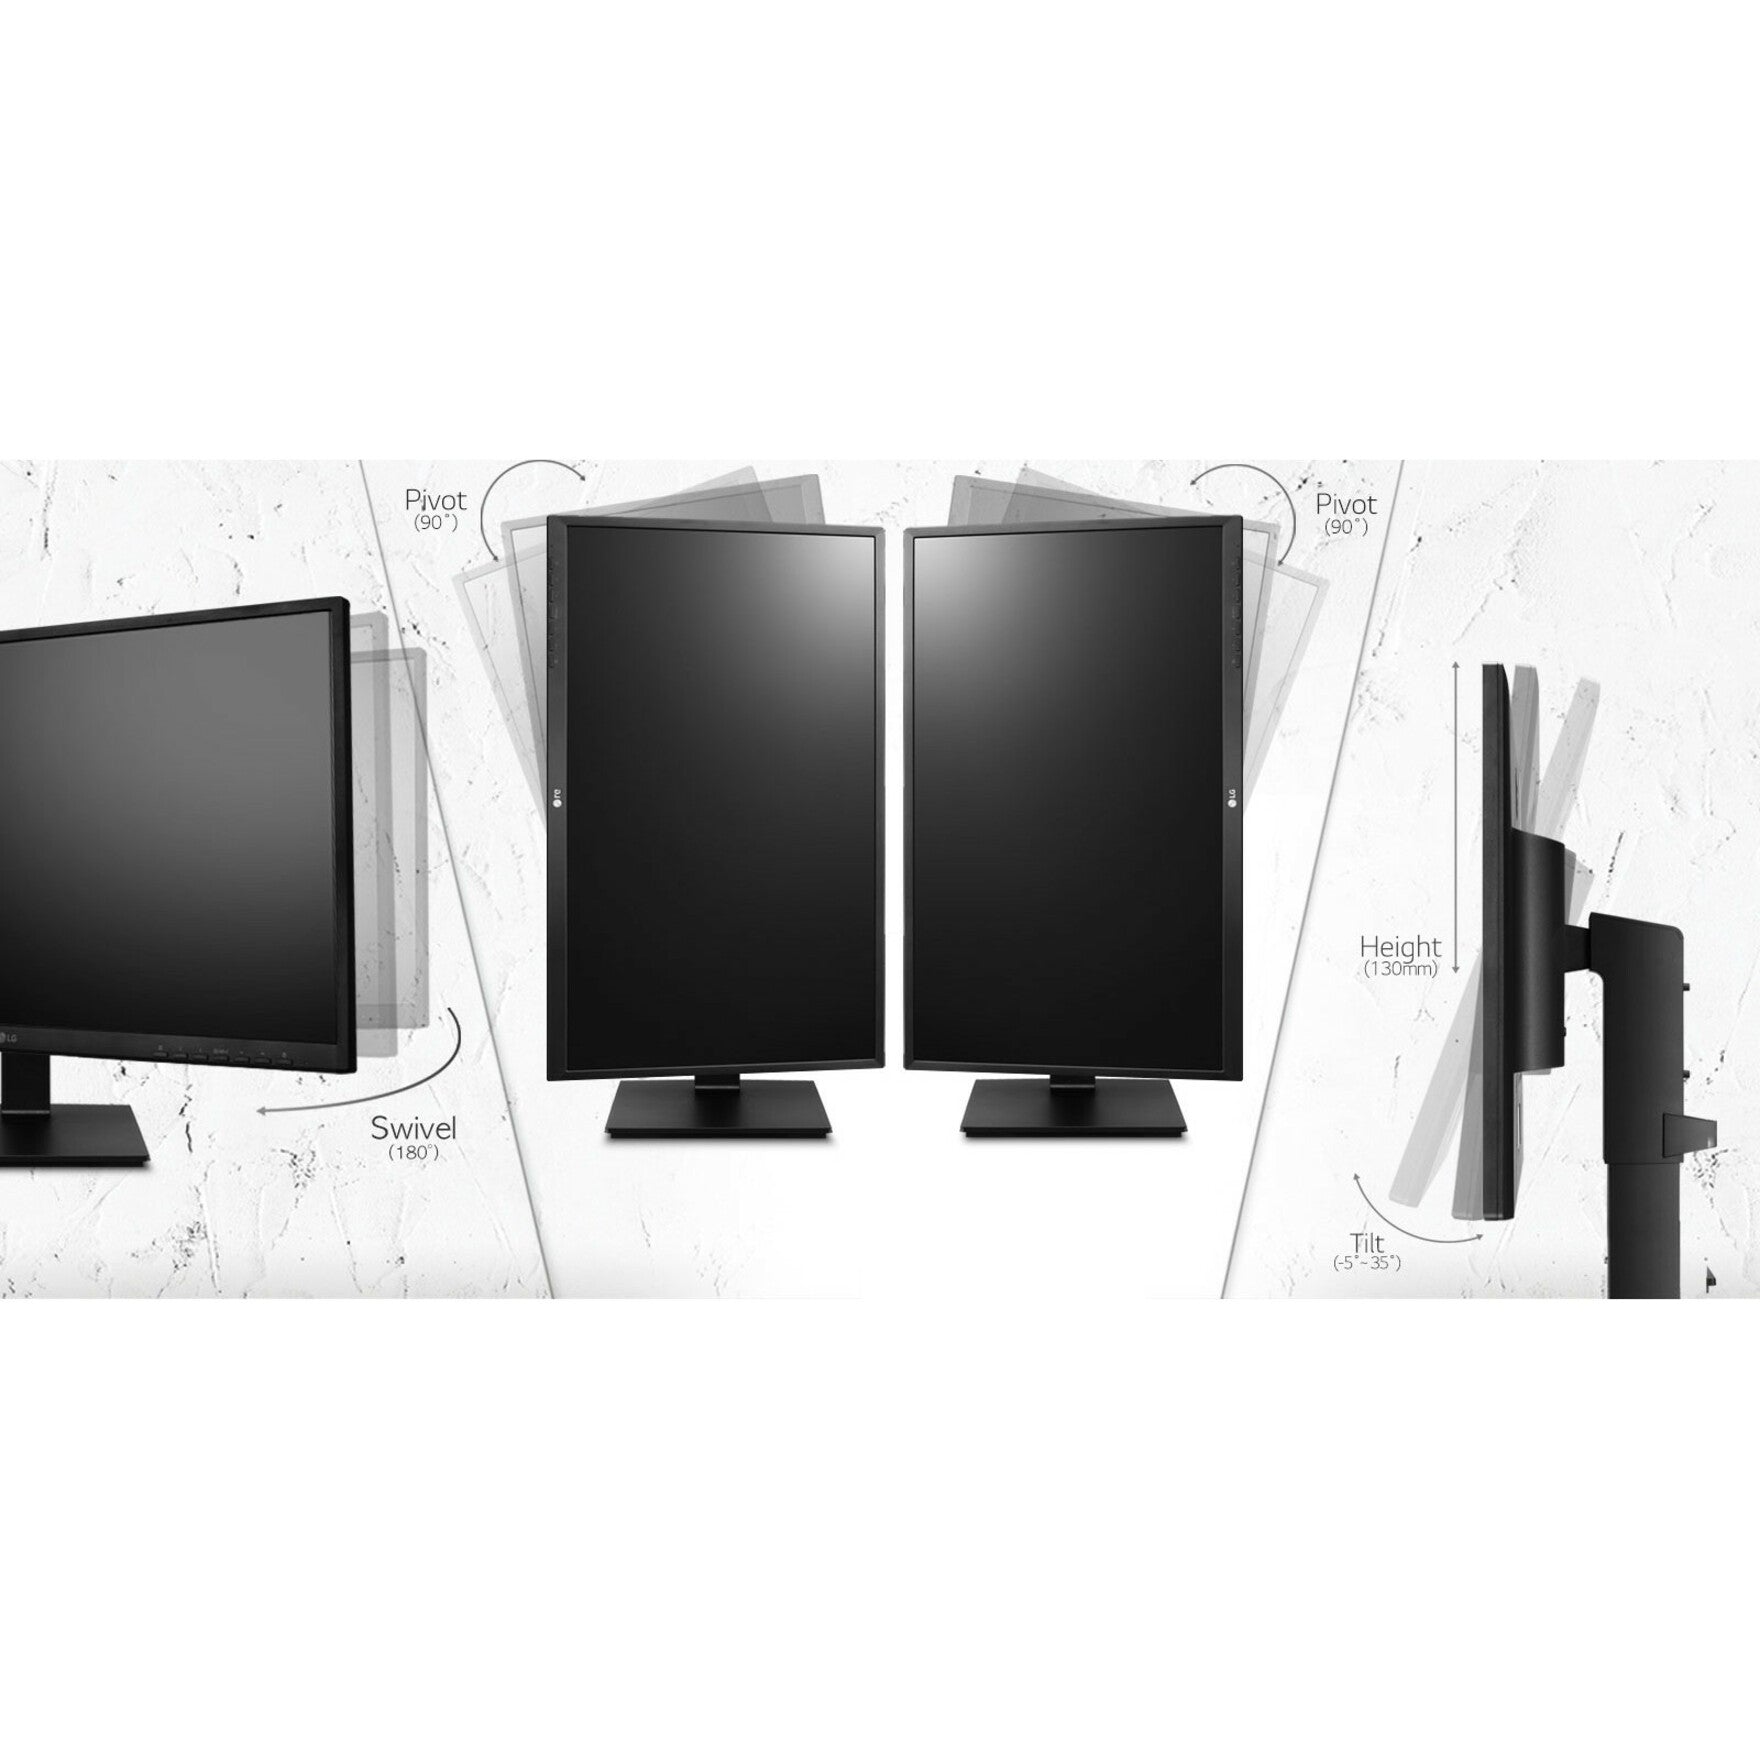 LG 27BL650C-B 27" Full HD LCD Monitor - TAA Compliant, USB Type-C, HDMI, DisplayPort